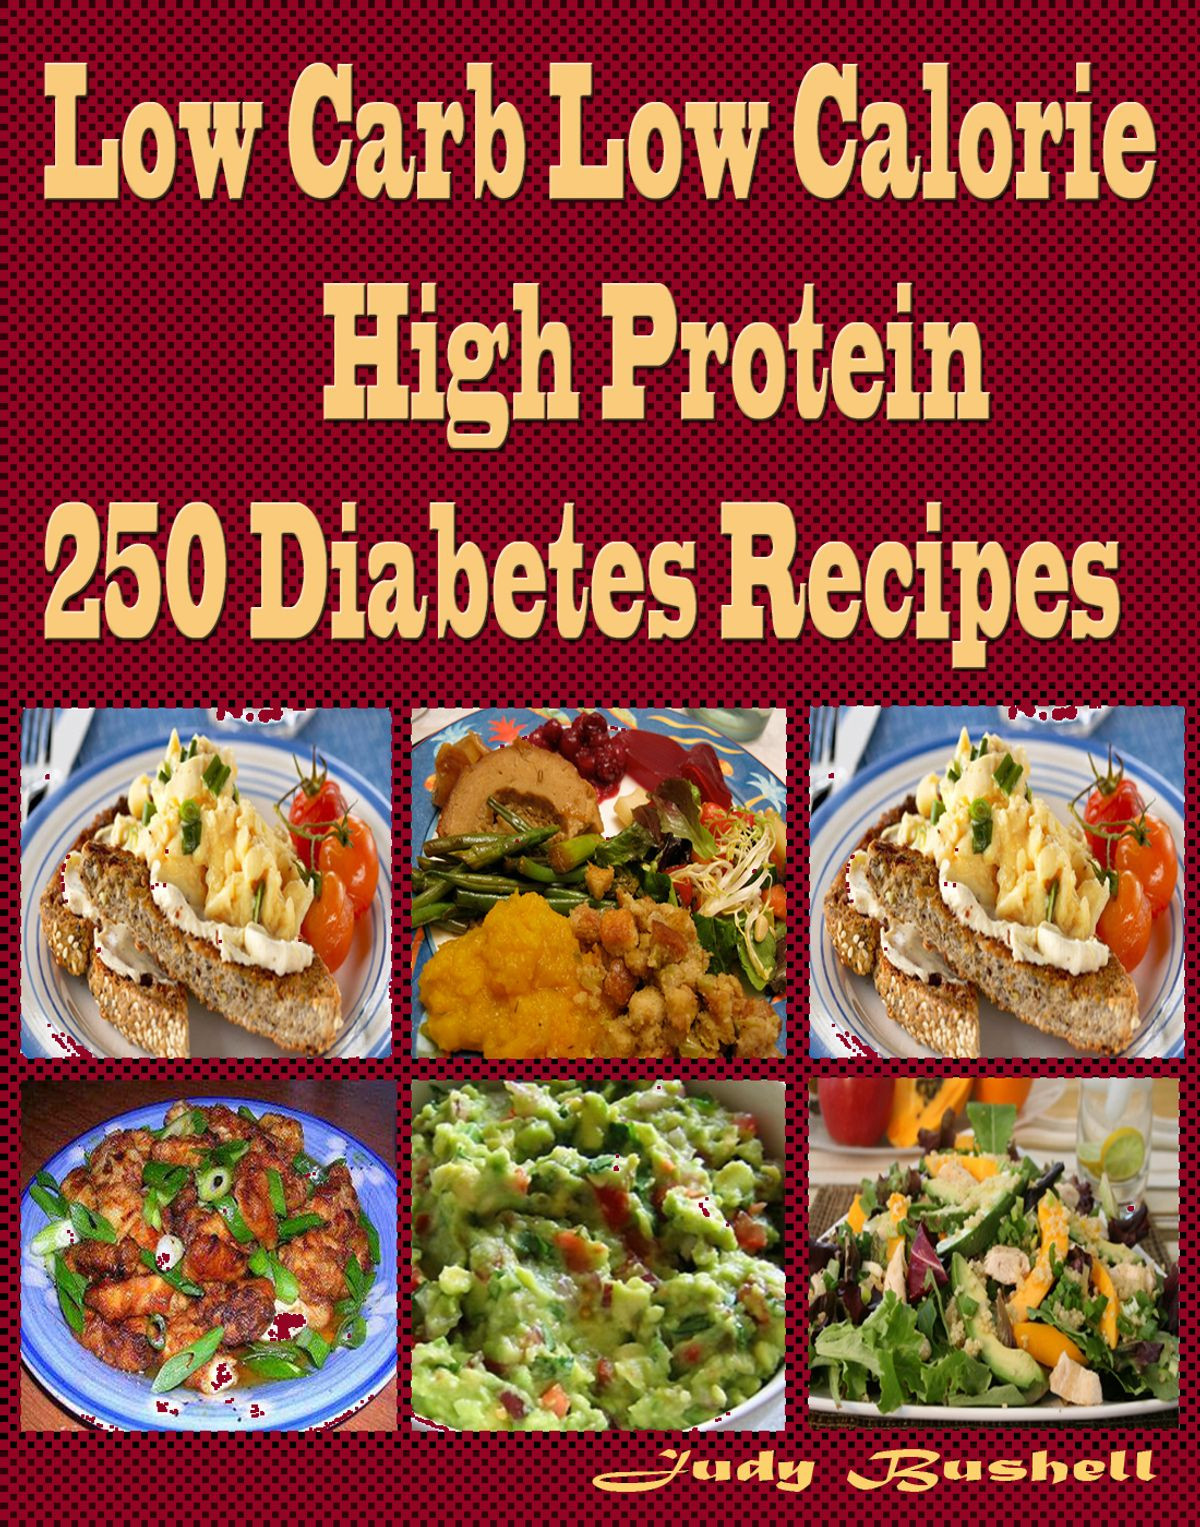 Low Calorie Low Carb Recipes Unique Low Carb Low Calorie High Protein 250 Diabetes Recipes